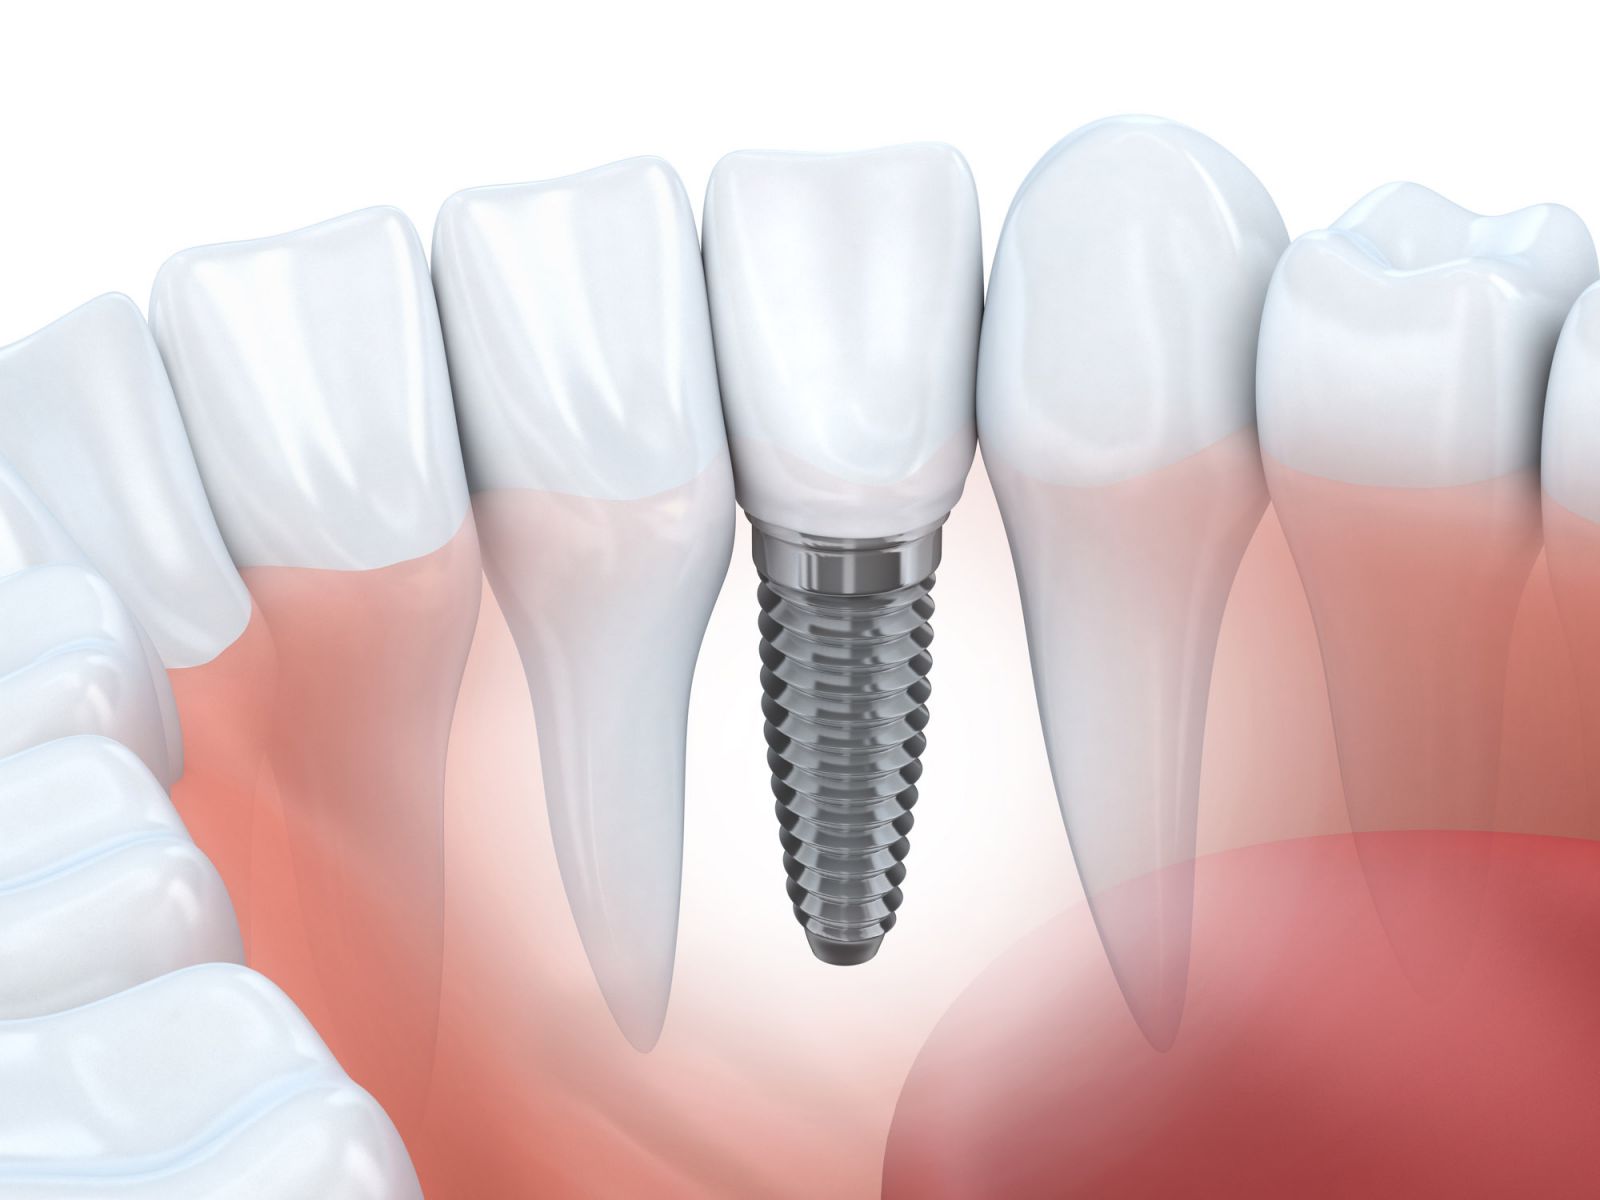 Nha khoa Ngọc Trai | Trồng răng giả cố định có bị đau hay không?